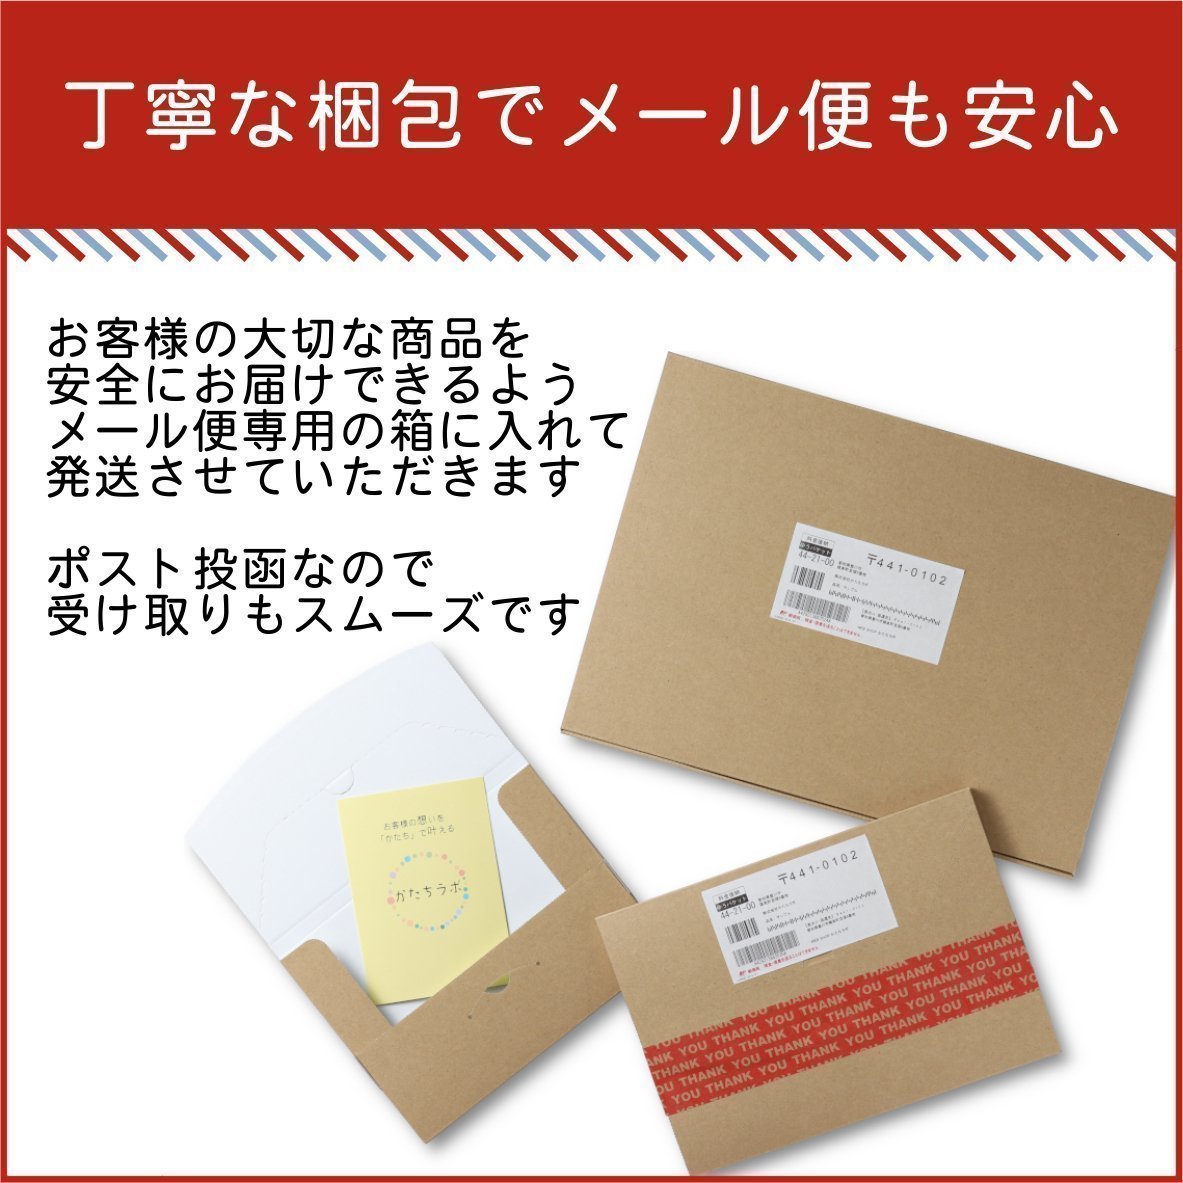 サインプレート 70×70 S (マスクの着用 ご協力をお願いします) ブロンズ 銅板風 コロナ対策 案内表示 感染予防 除菌 銅 日本製 (配送2)